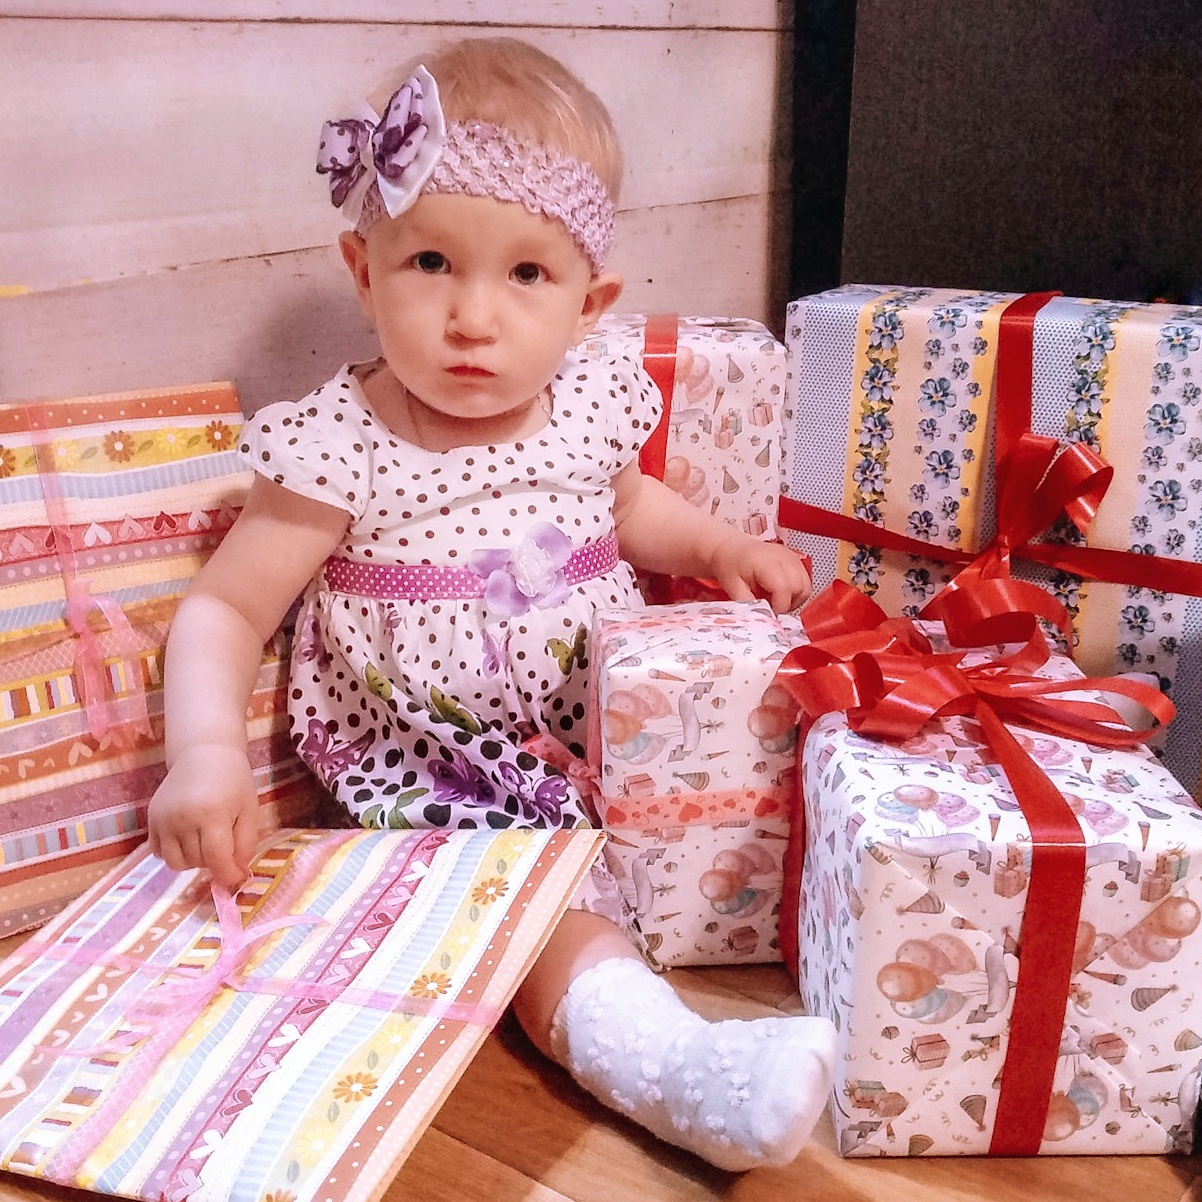 Подарки миланы на день рождения. Распаковка подарков. Распаковка подарков на день рождения девочке. Распаковка подарков на день рождения 10 лет. Мальчик распаковывает подарок.